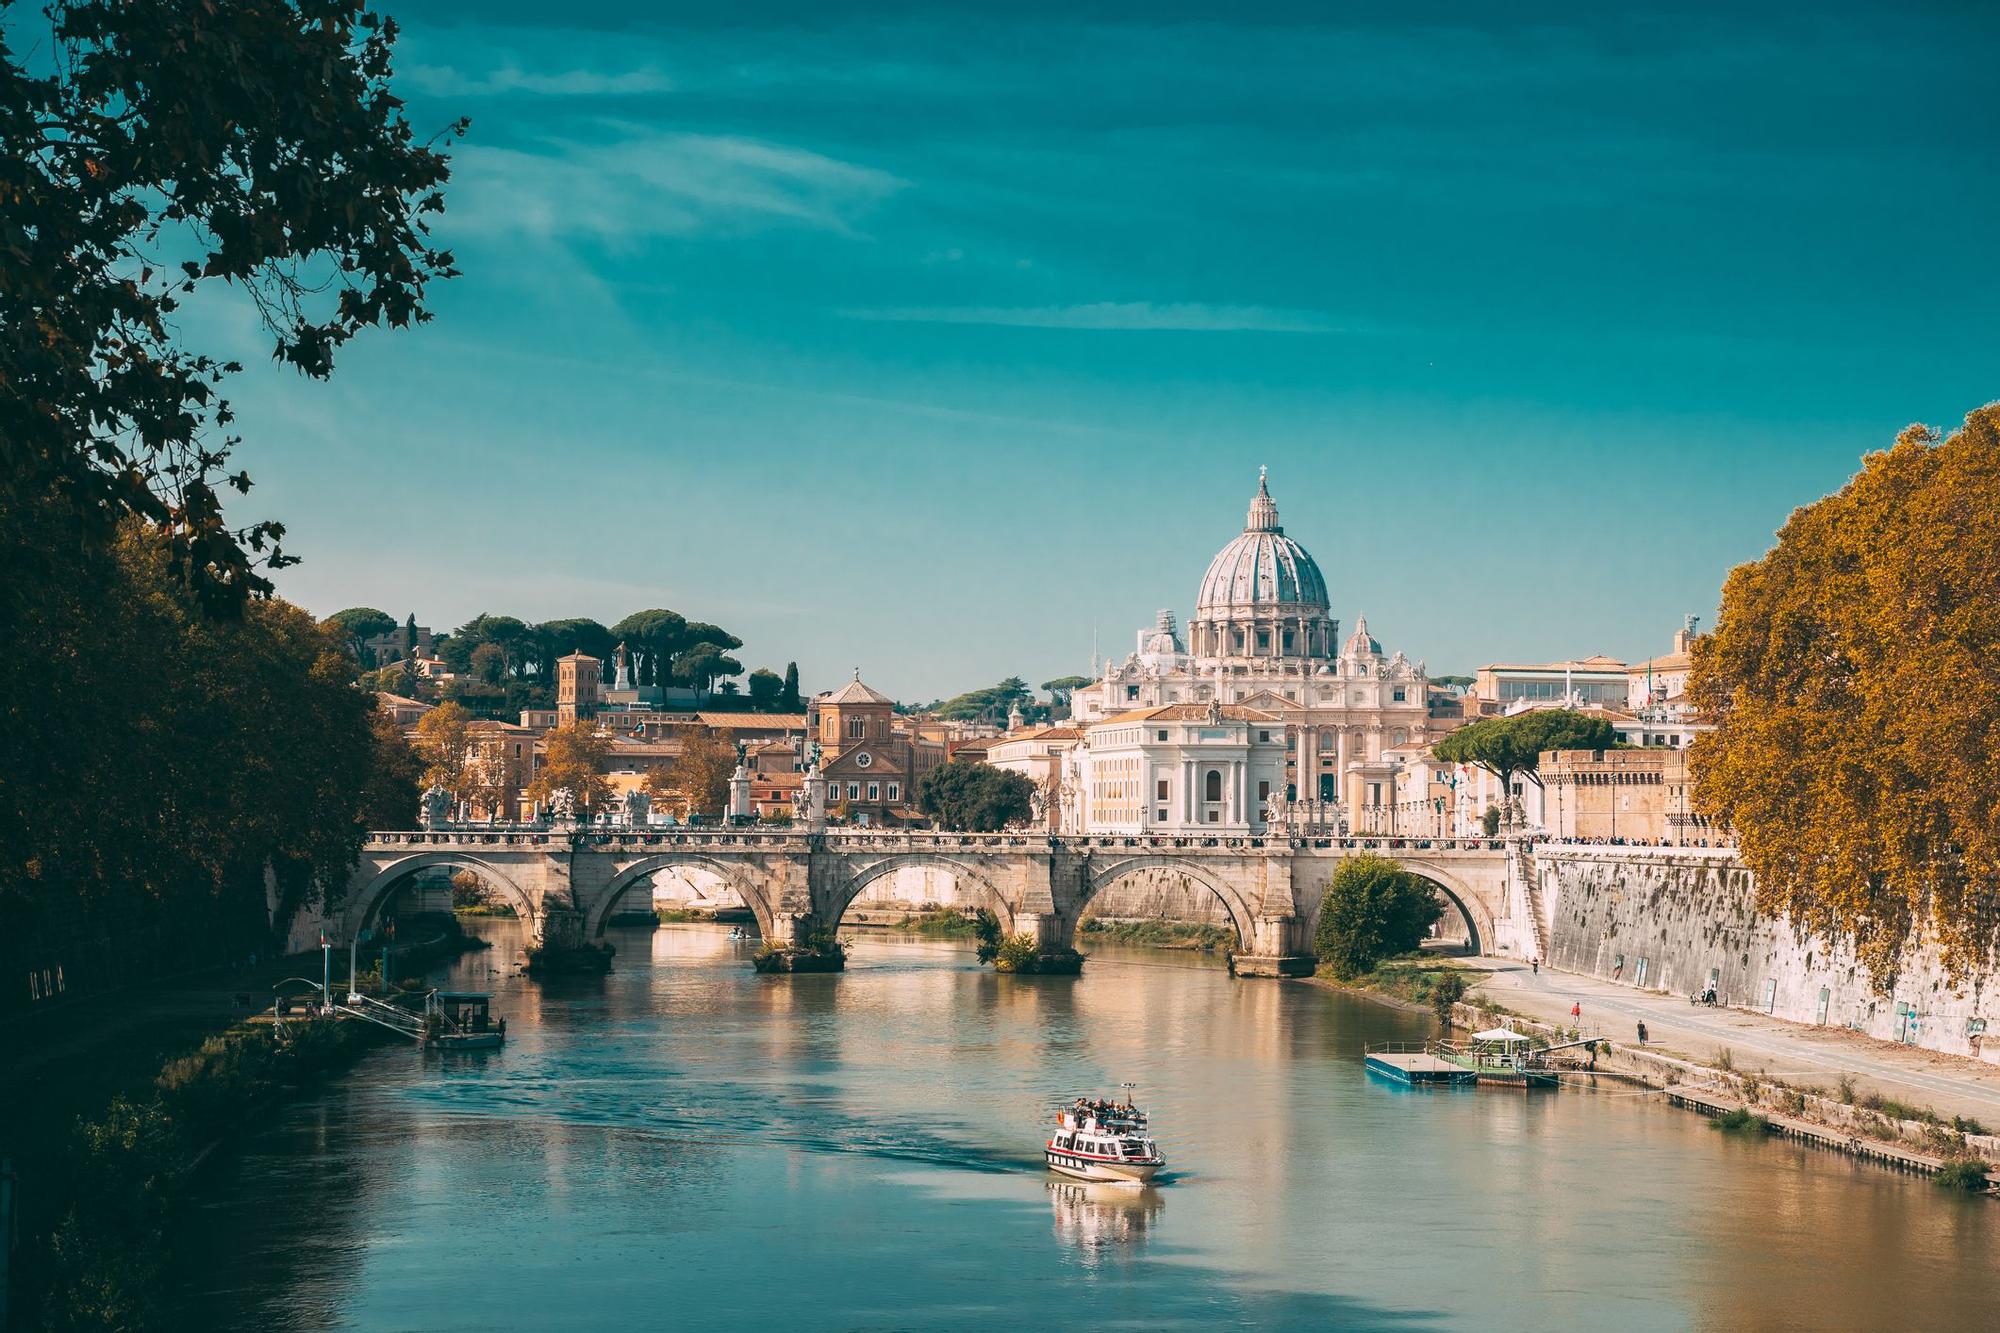 Vista de la Basílica papal de San Pedro en el Vaticano y del puente de Aelian